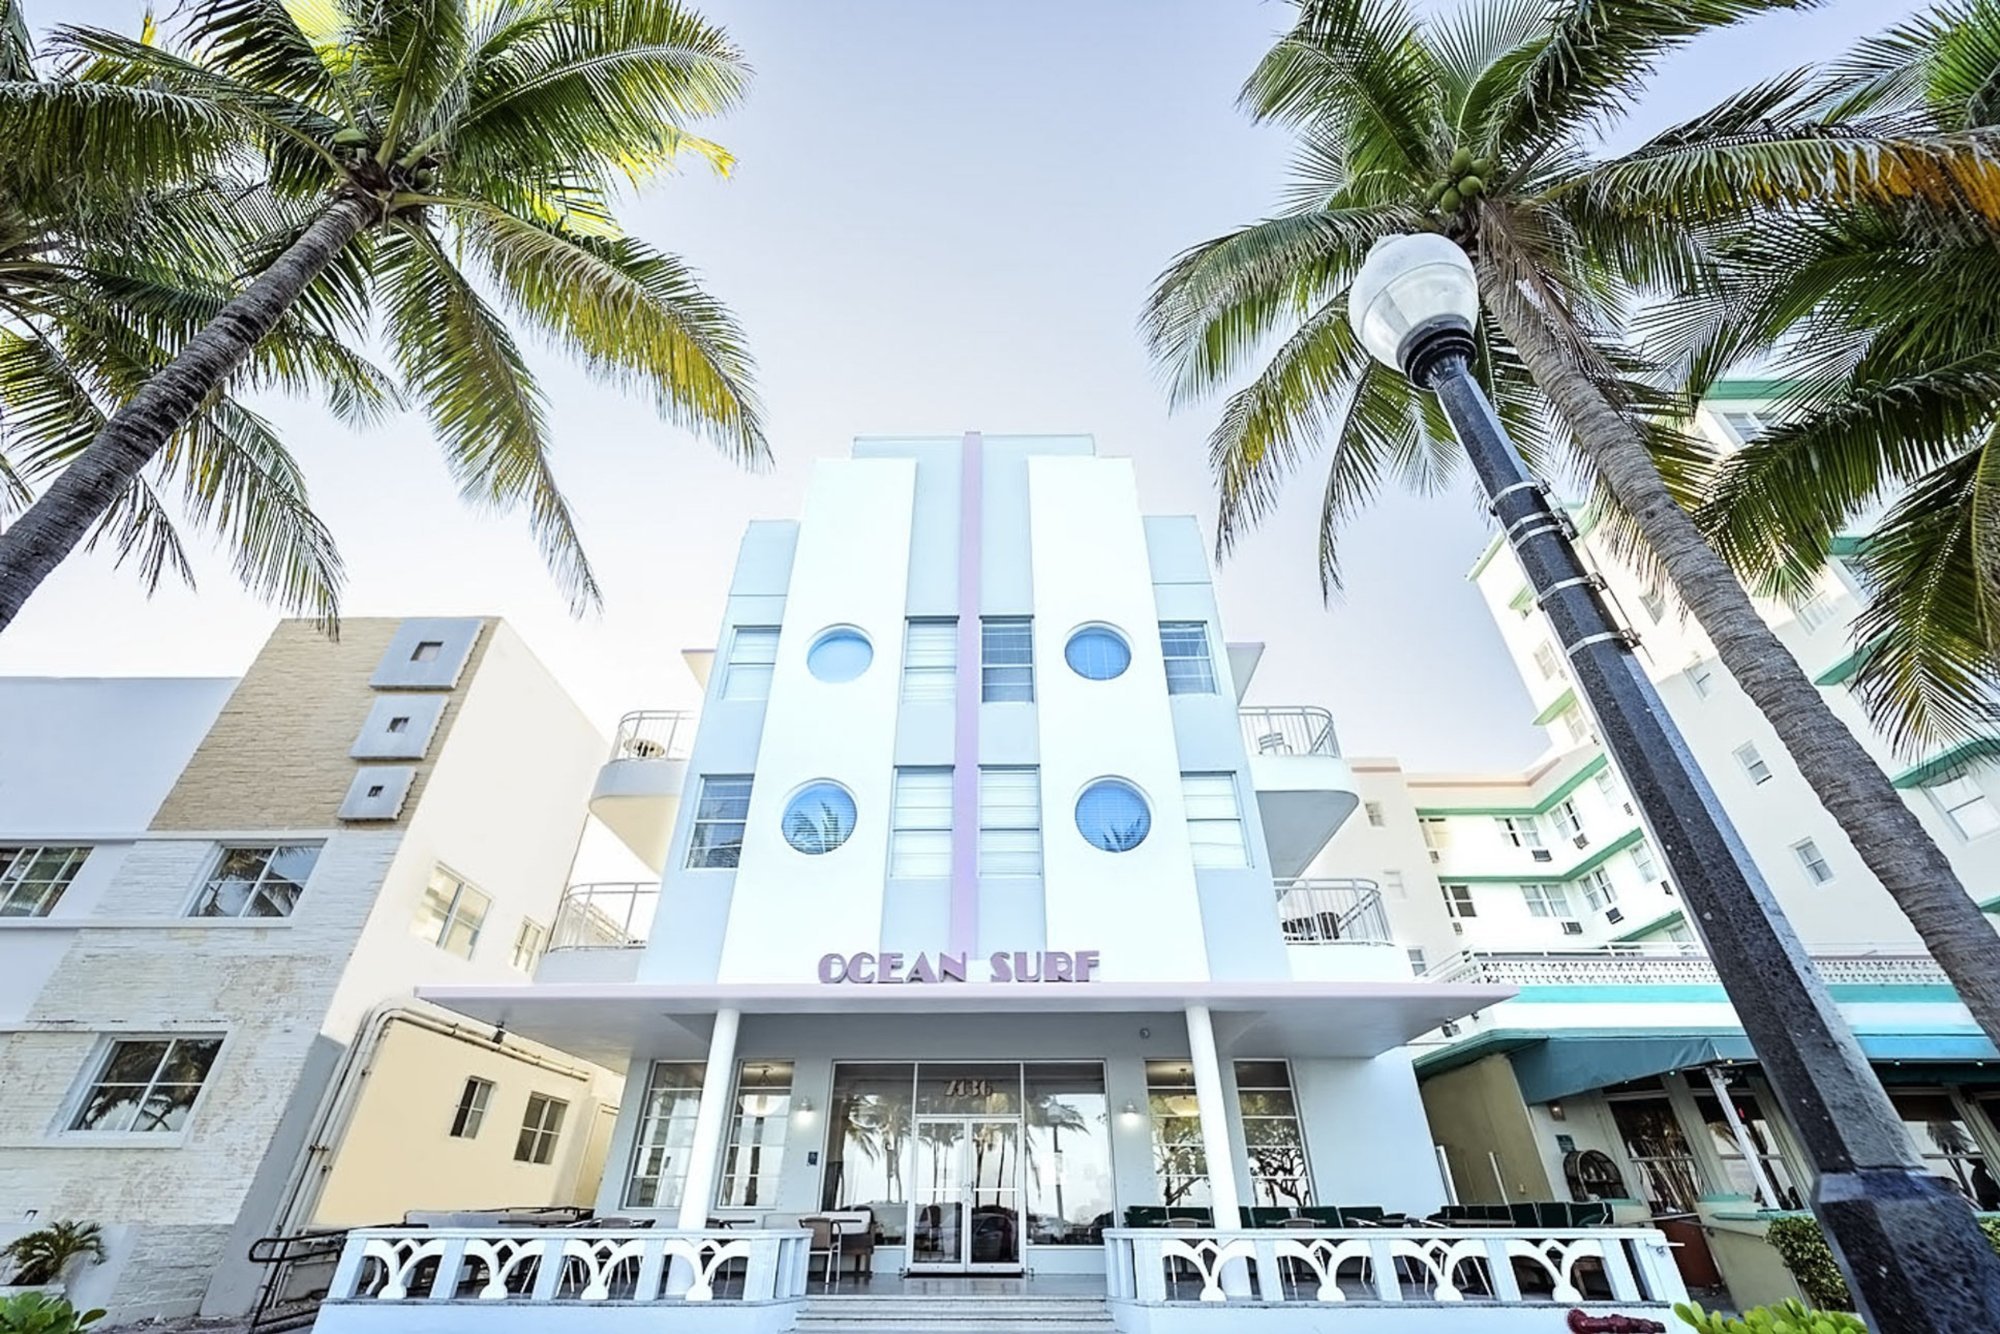 Photo of Ocean Surf Hotel South Beach, Miami Beach, FL